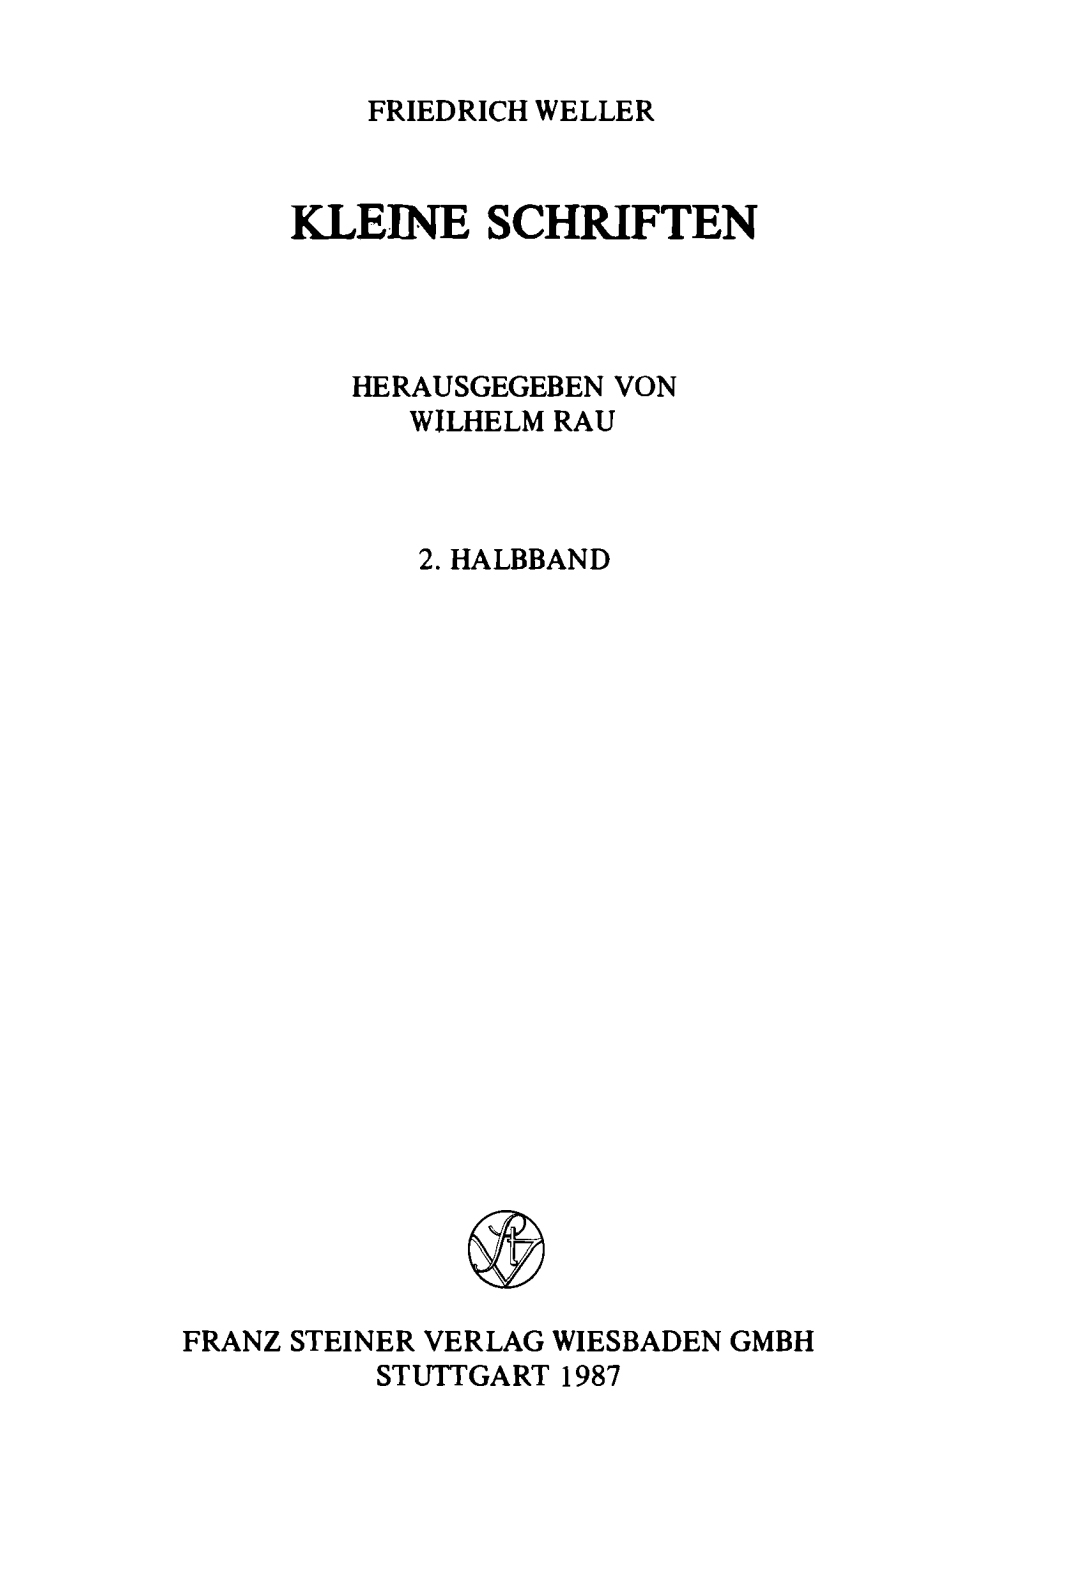 Kleine Schriften Vol 2 Weller 1987-front.jpg